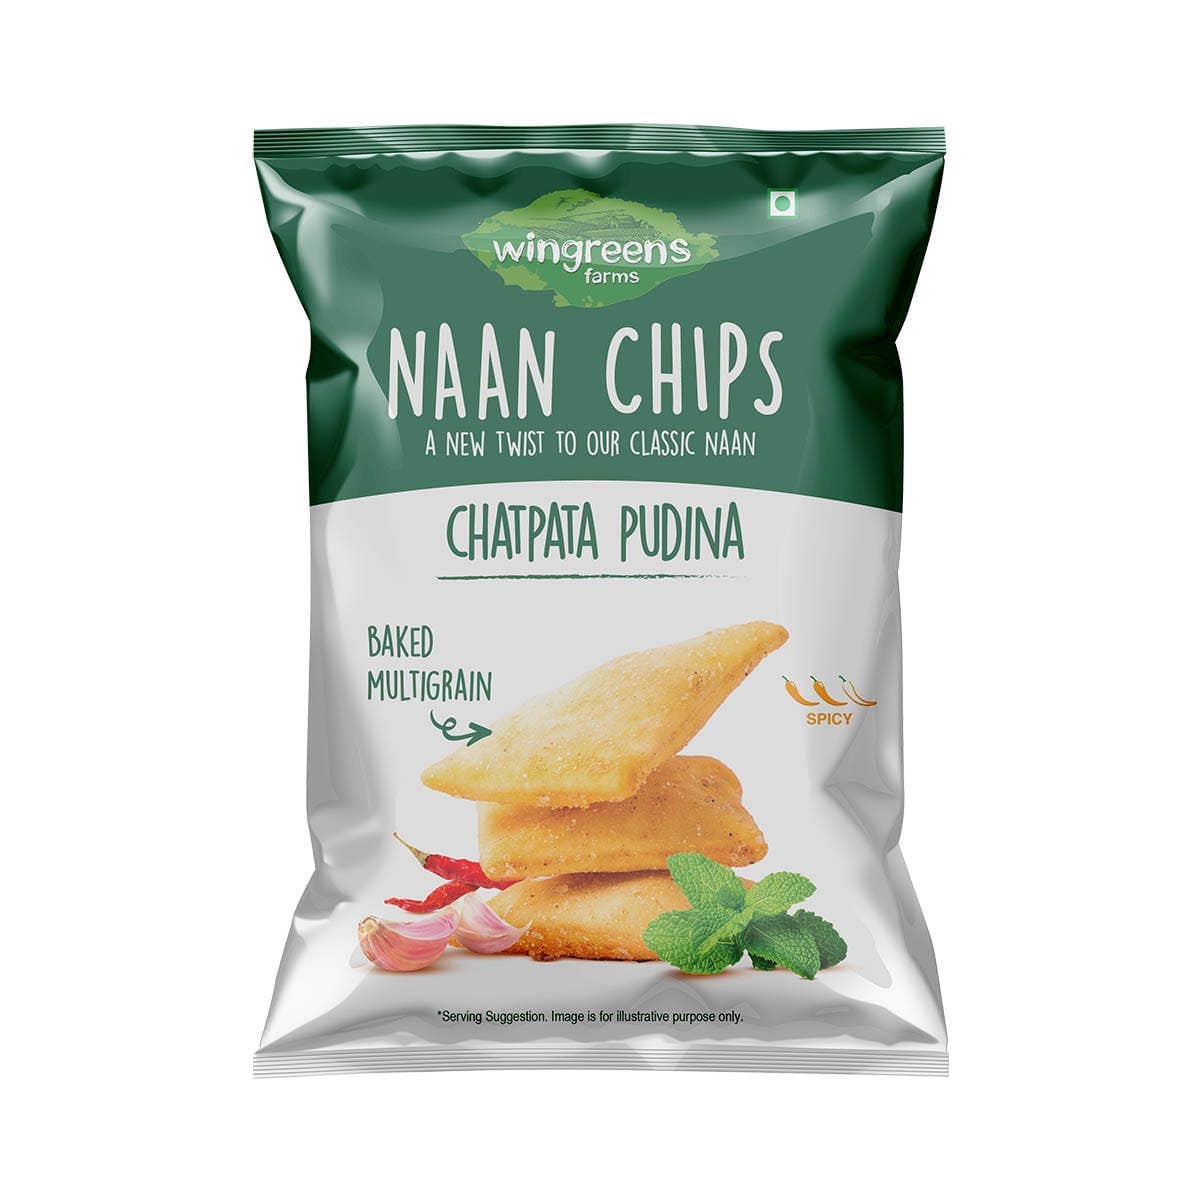 chatpata pudina naan chips